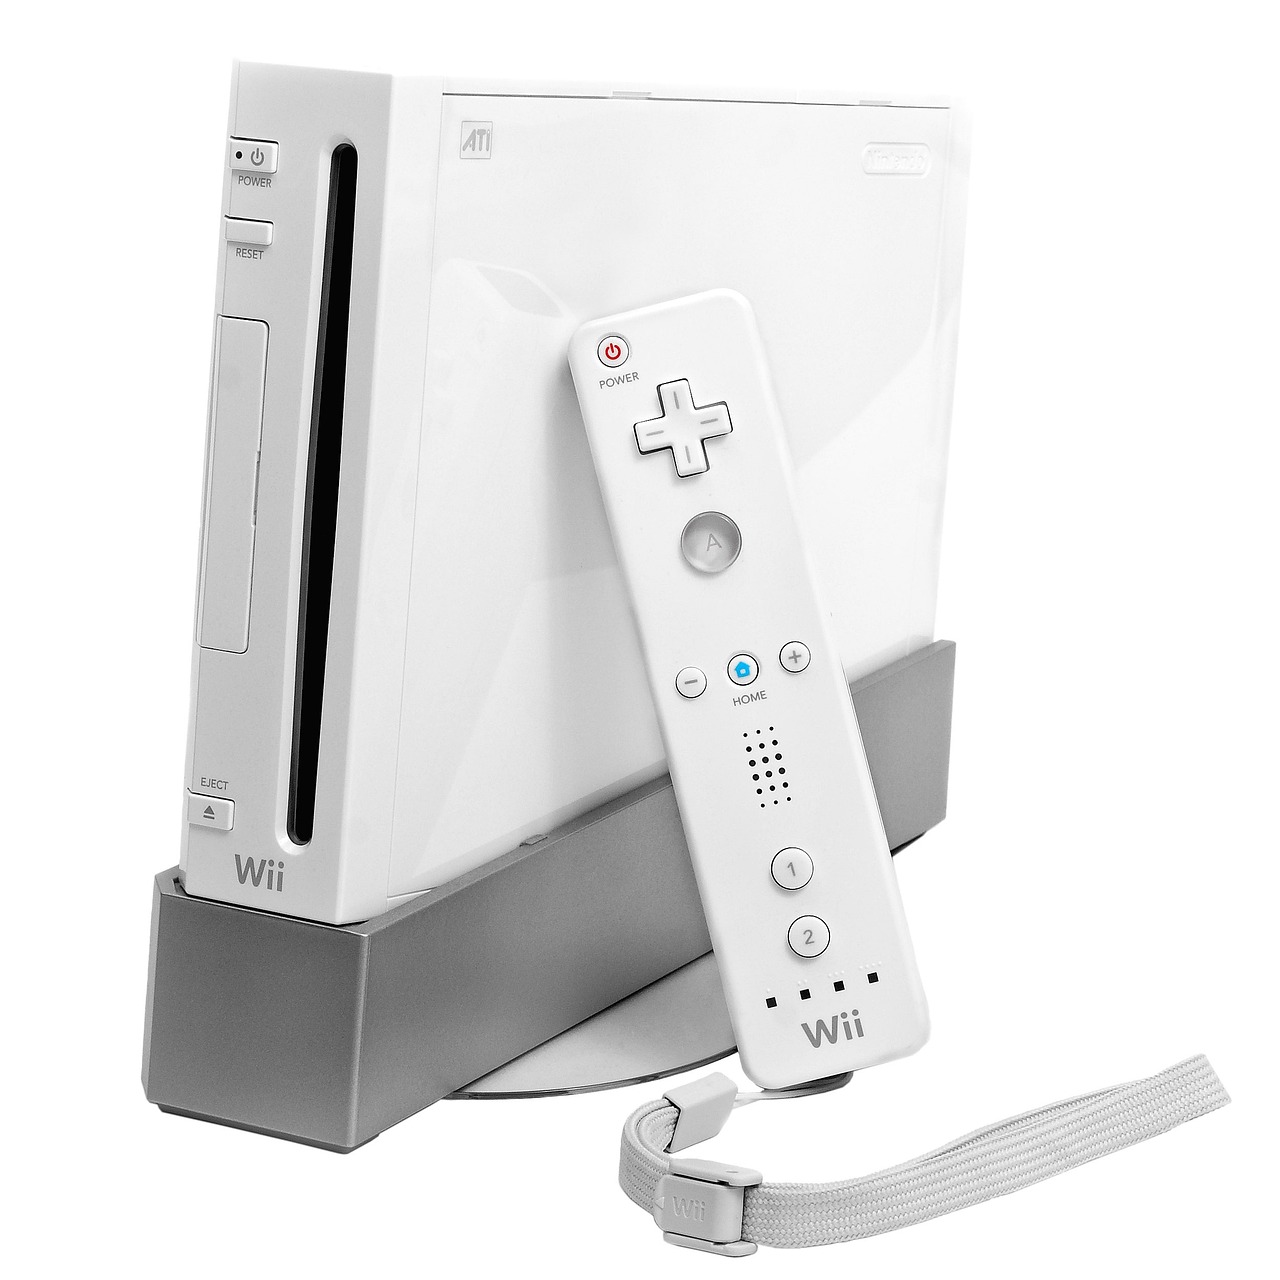 Come fare la modifica alla Wii nel 2023 e leggere giochi da USB